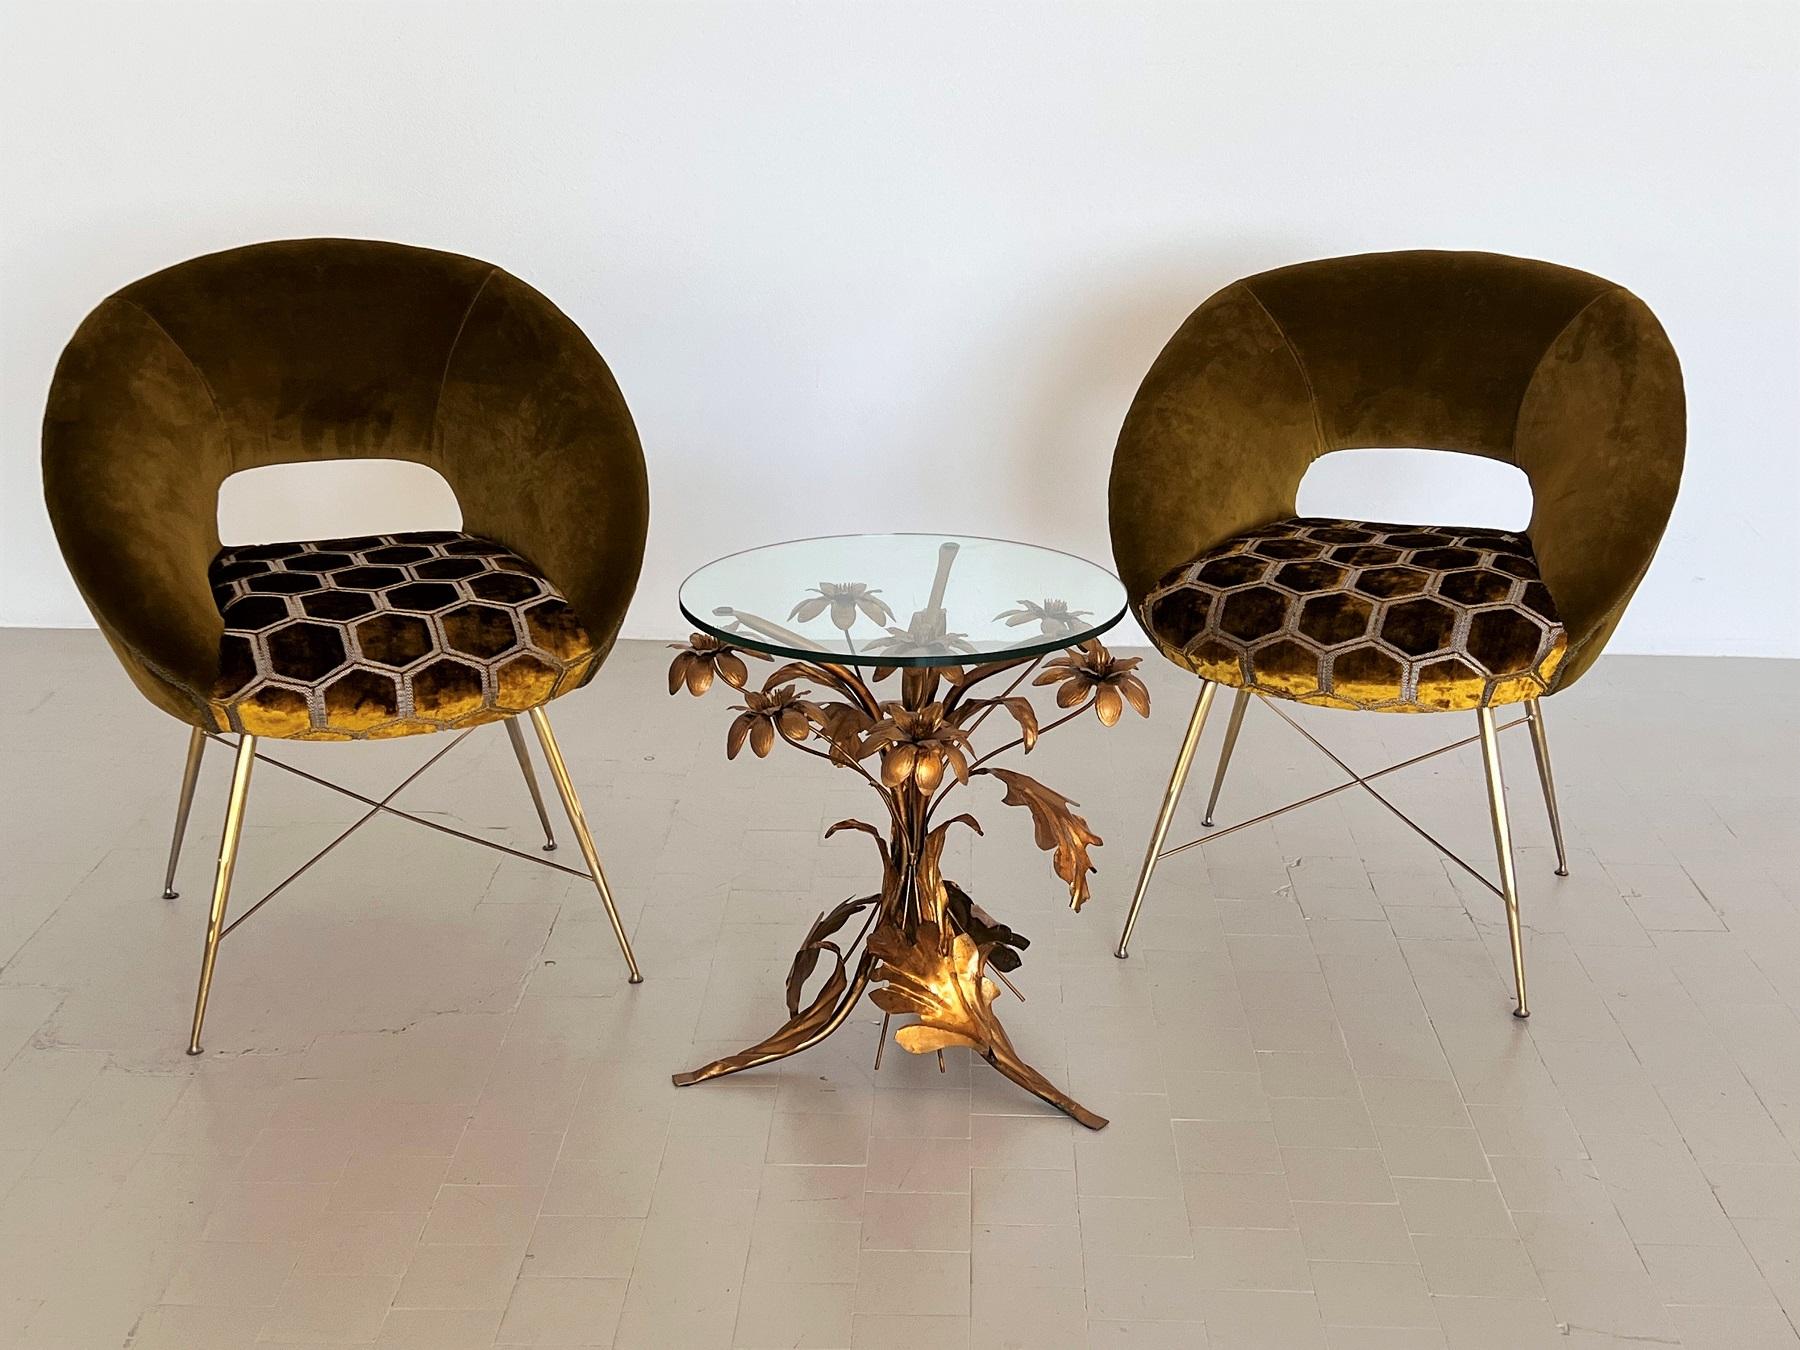 Magnifique ensemble de deux chaises d'appoint conçues par Silvio Cavatorta dans les années 1950 et fabriquées en Italie.
Les bases des chaises sont en laiton brillant, qui a été poli.
Entièrement retapissé à l'intérieur et à l'extérieur avec des